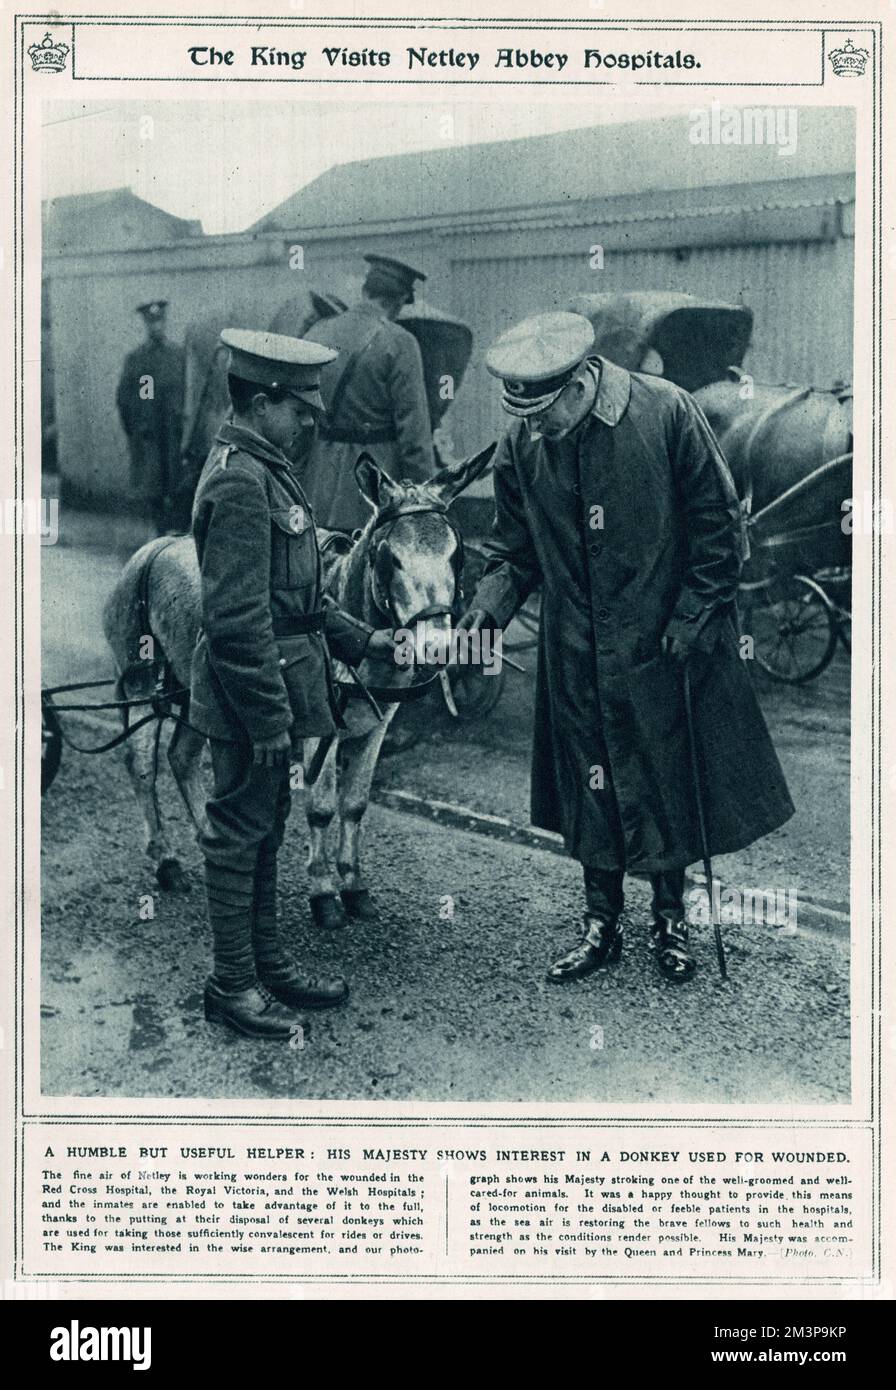 König George V begleitete Queen Mary und Prinzessin Mary beim Besuch des Royal Victoria Military Hospital in Netley, nahe Southampton, erweitert und genutzt vom Roten Kreuz während des Ersten Weltkriegs. George V. streichelte einen der Esel, die benutzt wurden, um konvaleszente Soldaten für Reitfahrten mitzunehmen. Stockfoto